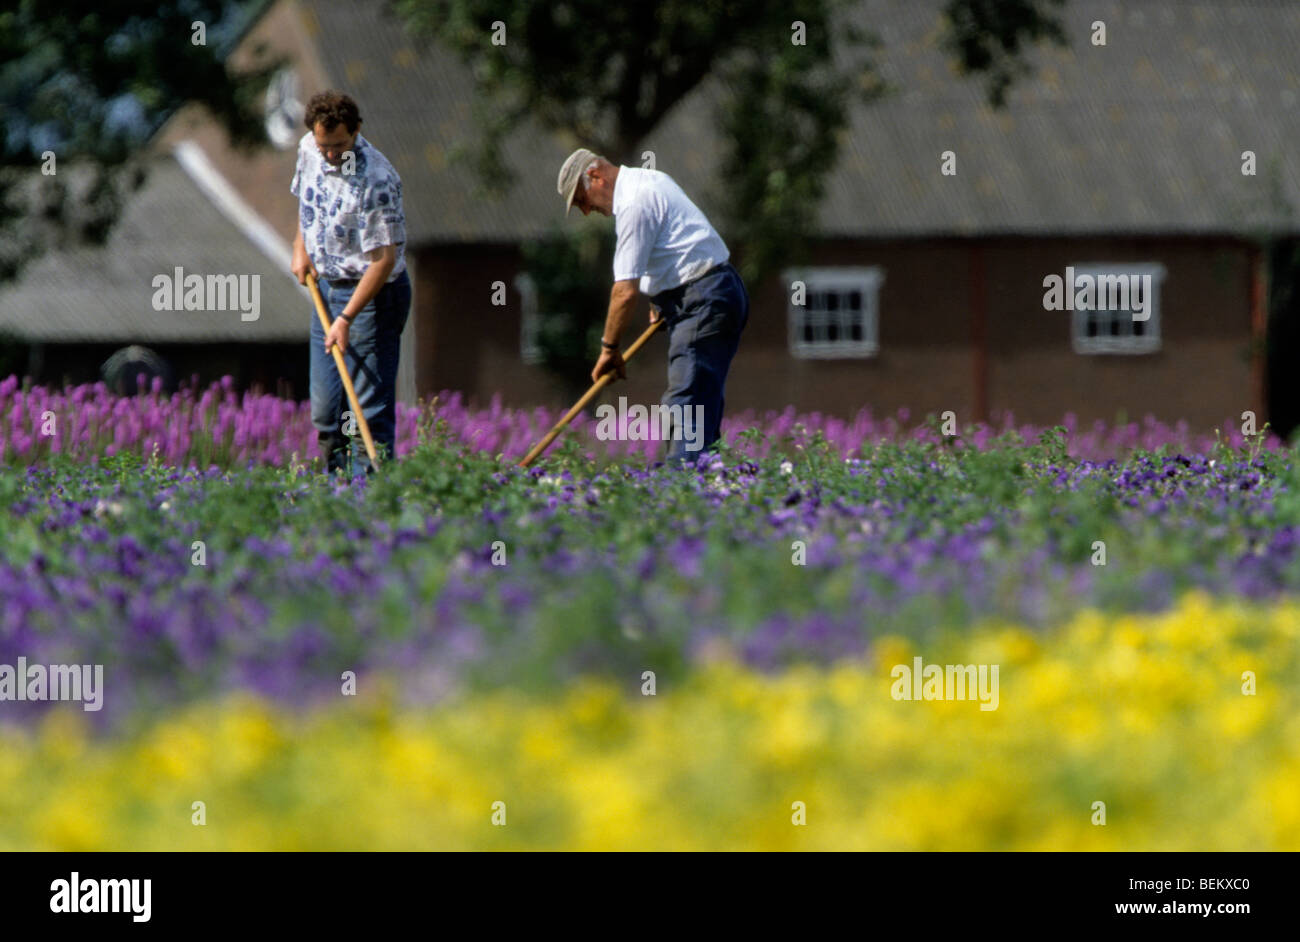 Two gardeners weeding weeds among flowers in Zeeland, Netherlands Stock Photo